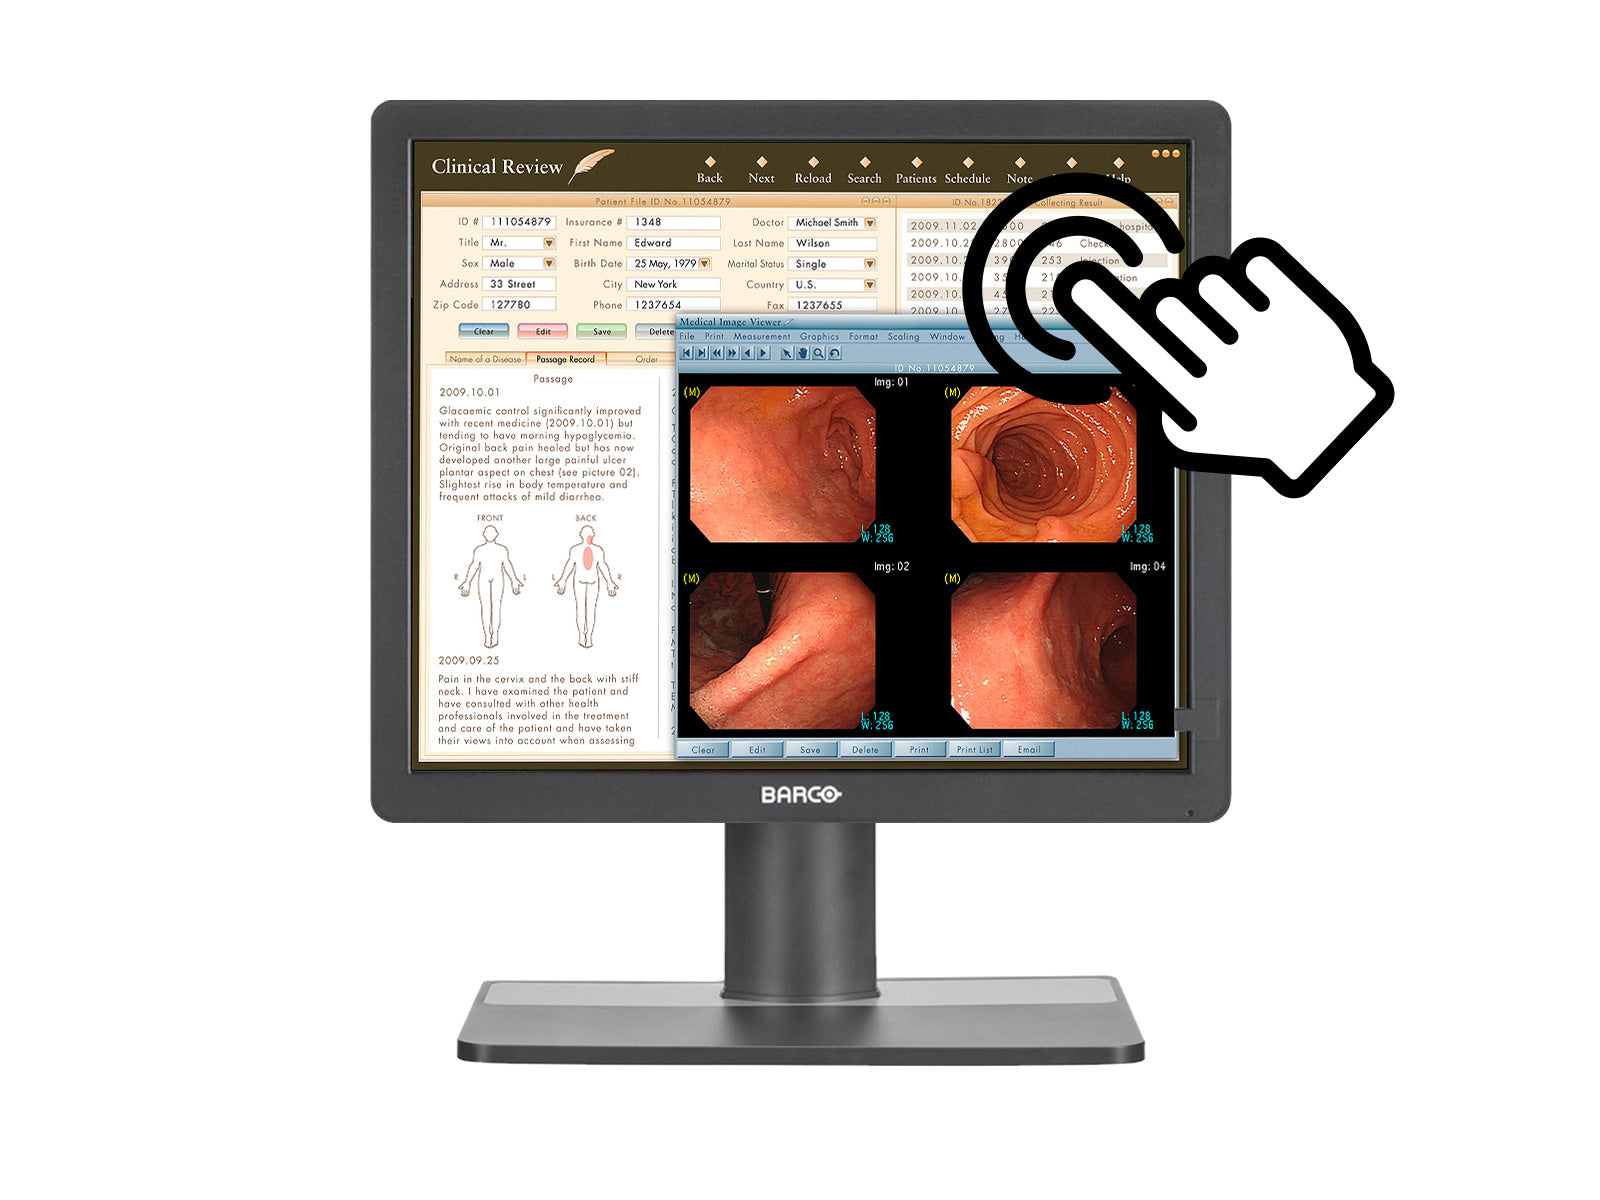 Barco Écran d'examen clinique à écran tactile couleur MDRC-1219 TS 1MP 19" (K9301821A) Monitors.com